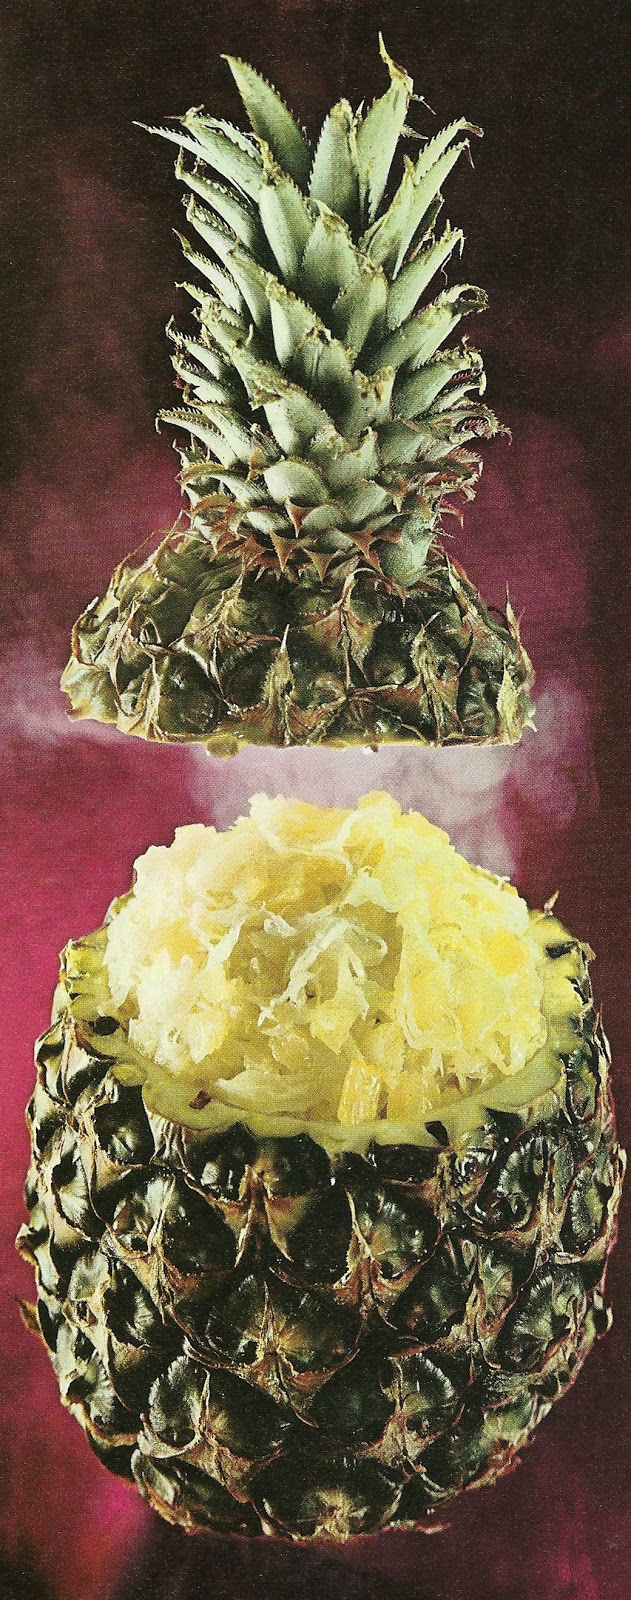 Yuckylicious: Sauerkraut Stuffed Pineapple